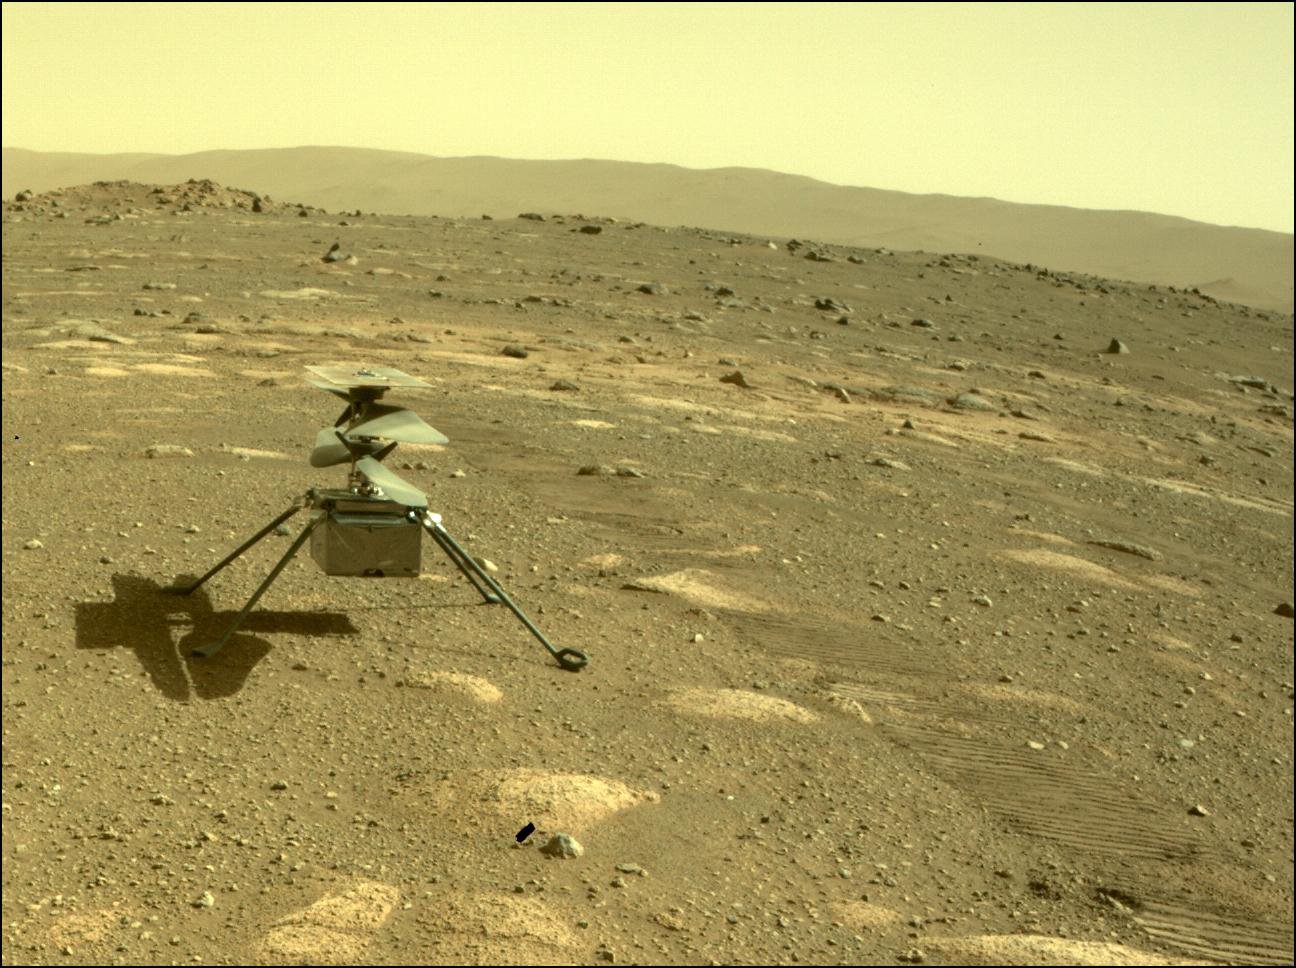 Een foto genomen door de Perseverance-rover van de Ingenuity-helikopter op het oppervlak van Mars in april, net nadat de rover de helikopter had ingezet.